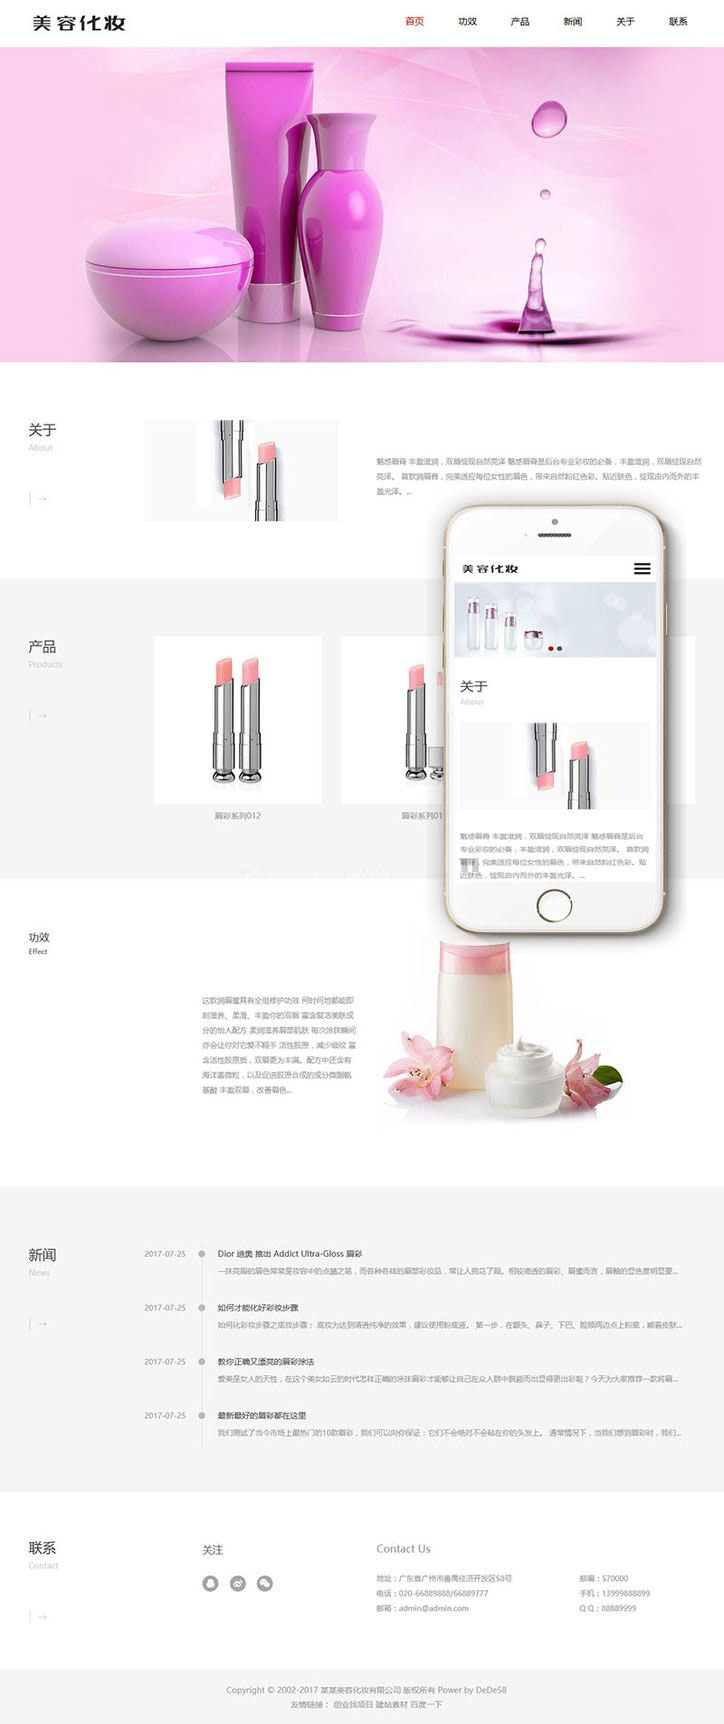 响应式唇膏美容化妆品公司网站源码 织梦dedecms模板(自适应手机移动端)插图